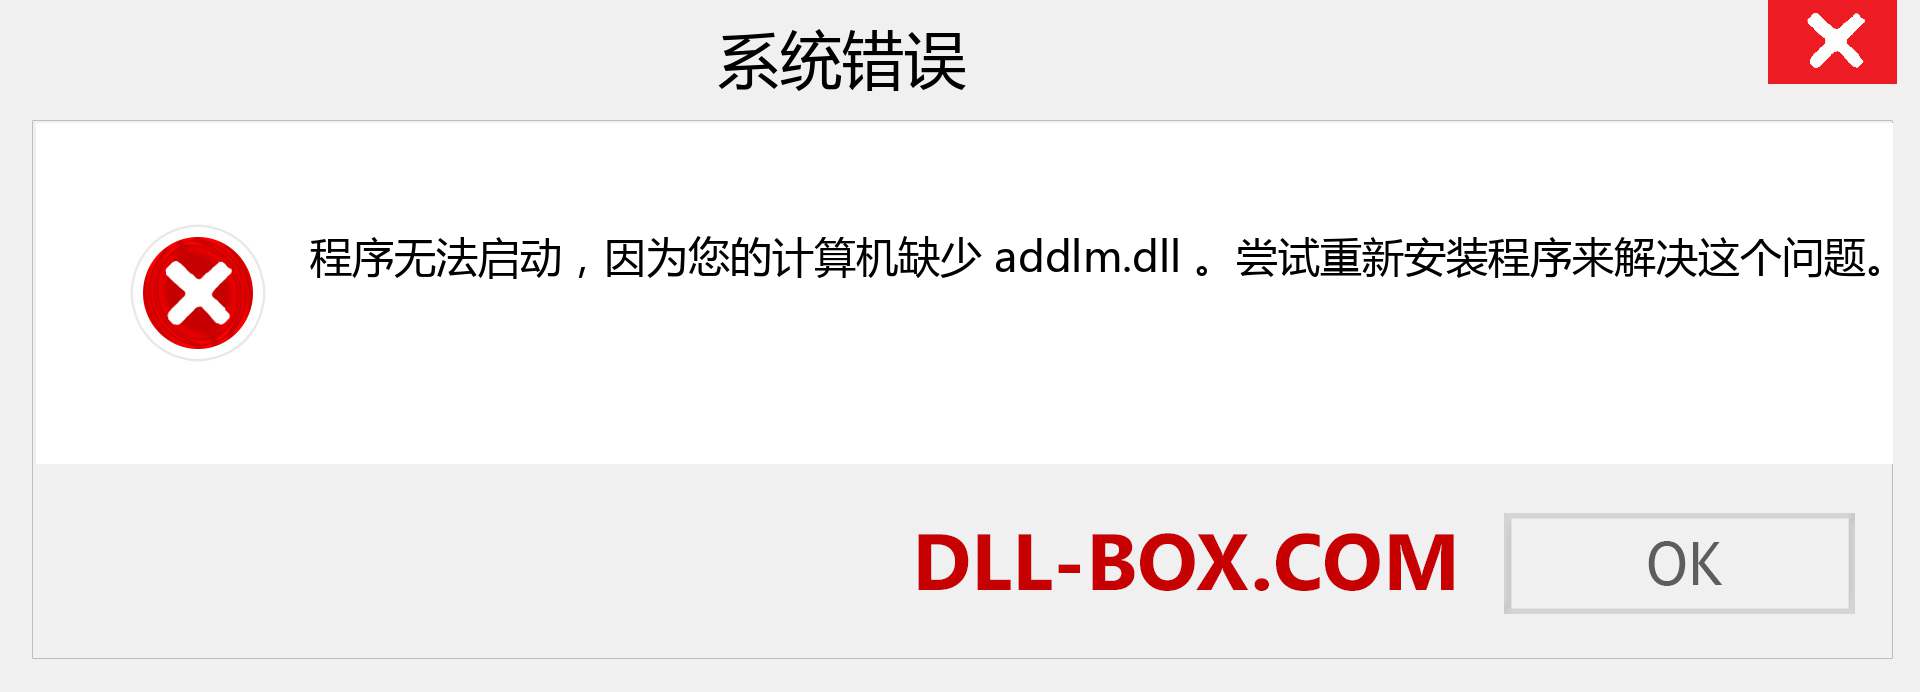 addlm.dll 文件丢失？。 适用于 Windows 7、8、10 的下载 - 修复 Windows、照片、图像上的 addlm dll 丢失错误